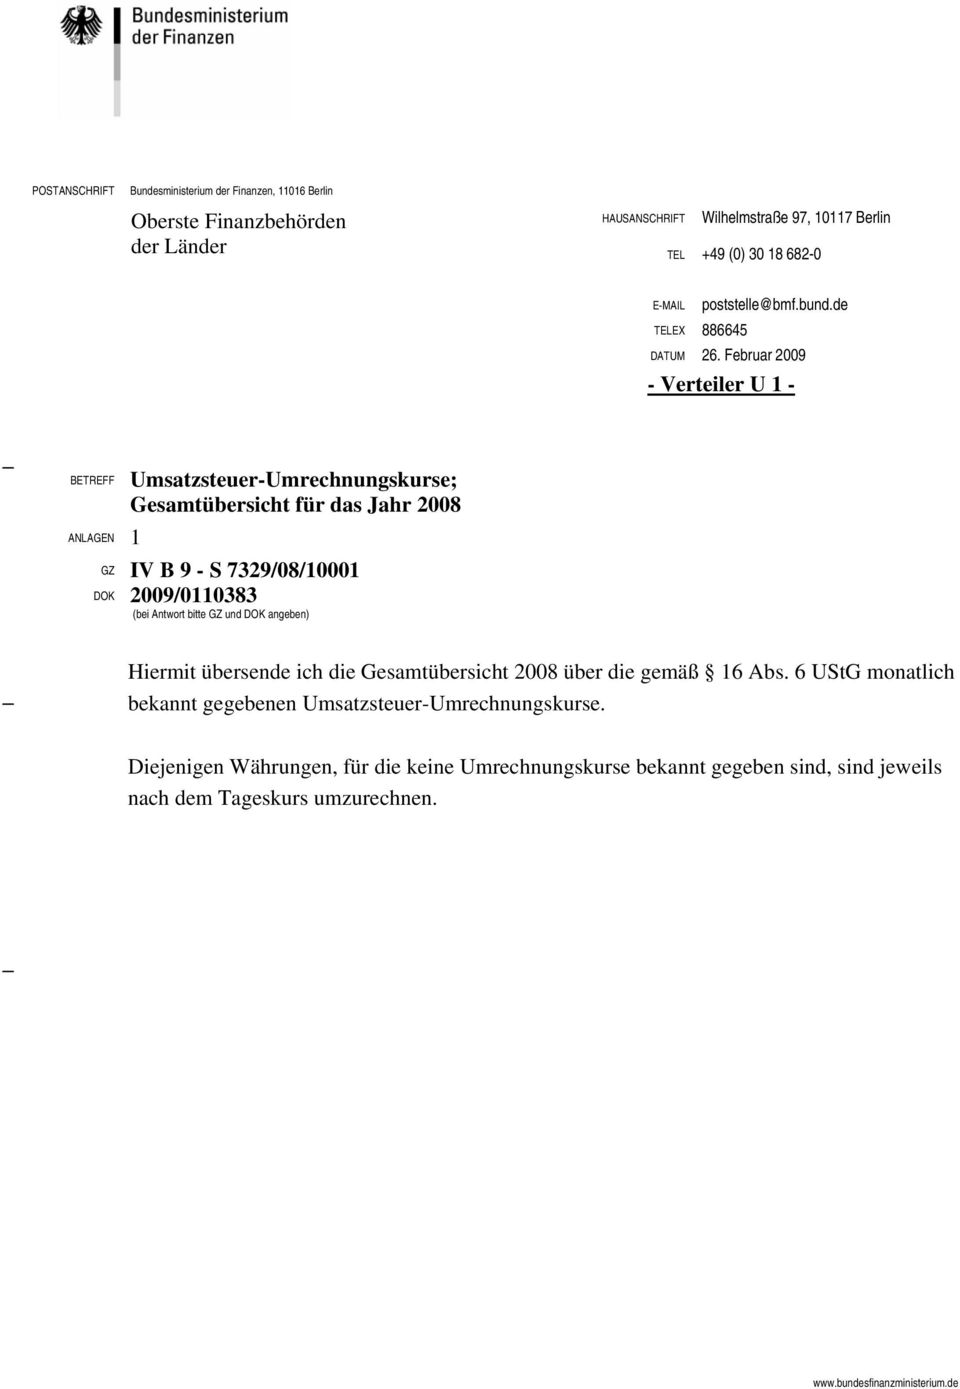 Februar 2009 - Verteiler U 1 - BETREFF ANLAGEN 1 Umsatzsteuer-Umrechnungskurse; Gesamtübersicht für das Jahr 2008 GZ IV B 9 - S 7329/08/10001 DOK 2009/0110383 (bei Antwort bitte GZ und DOK